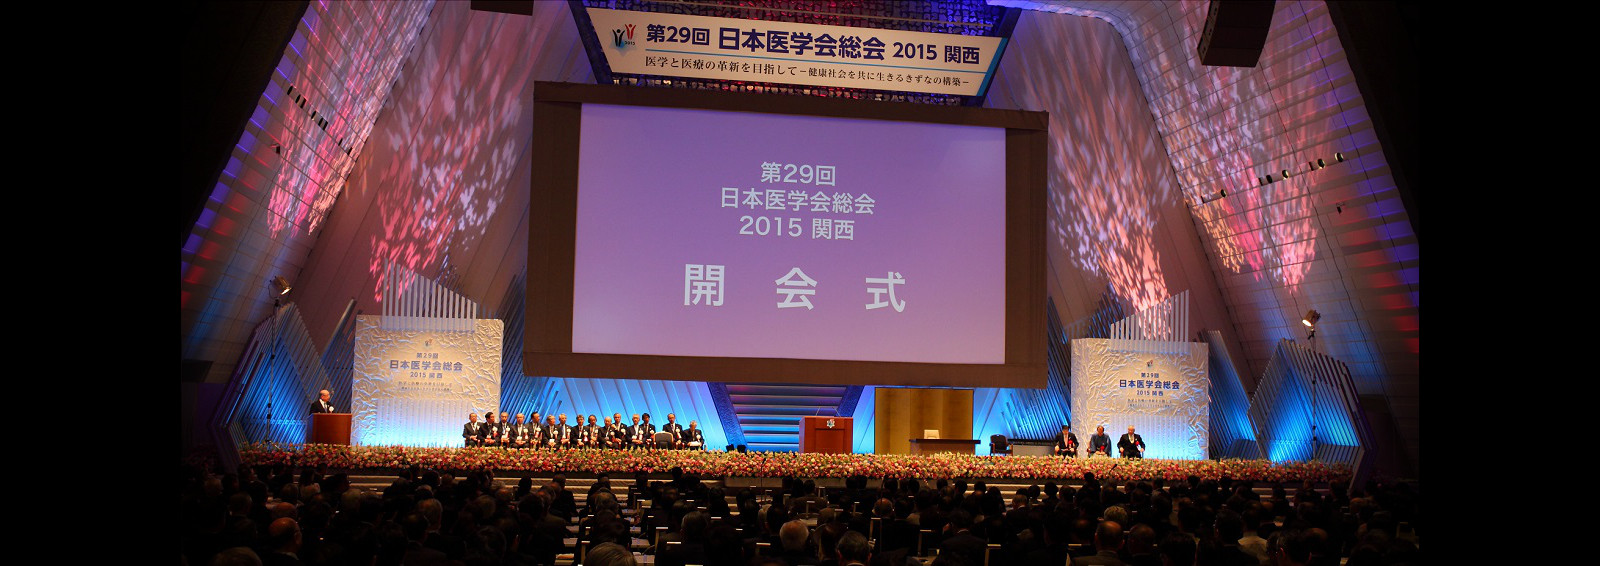 第29回日本医学会総会2015関西